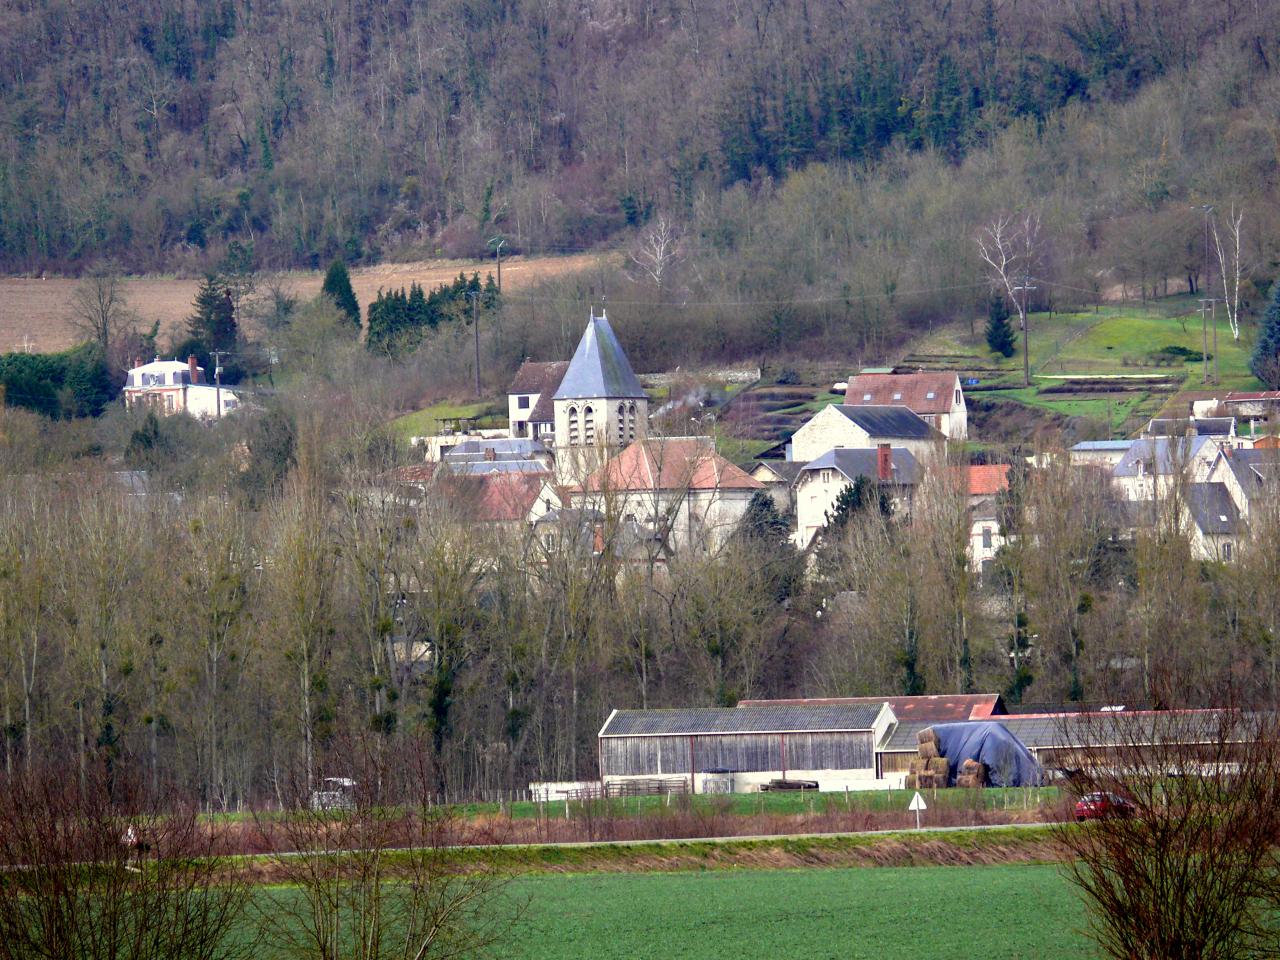 Condé sur Aisne (Village)